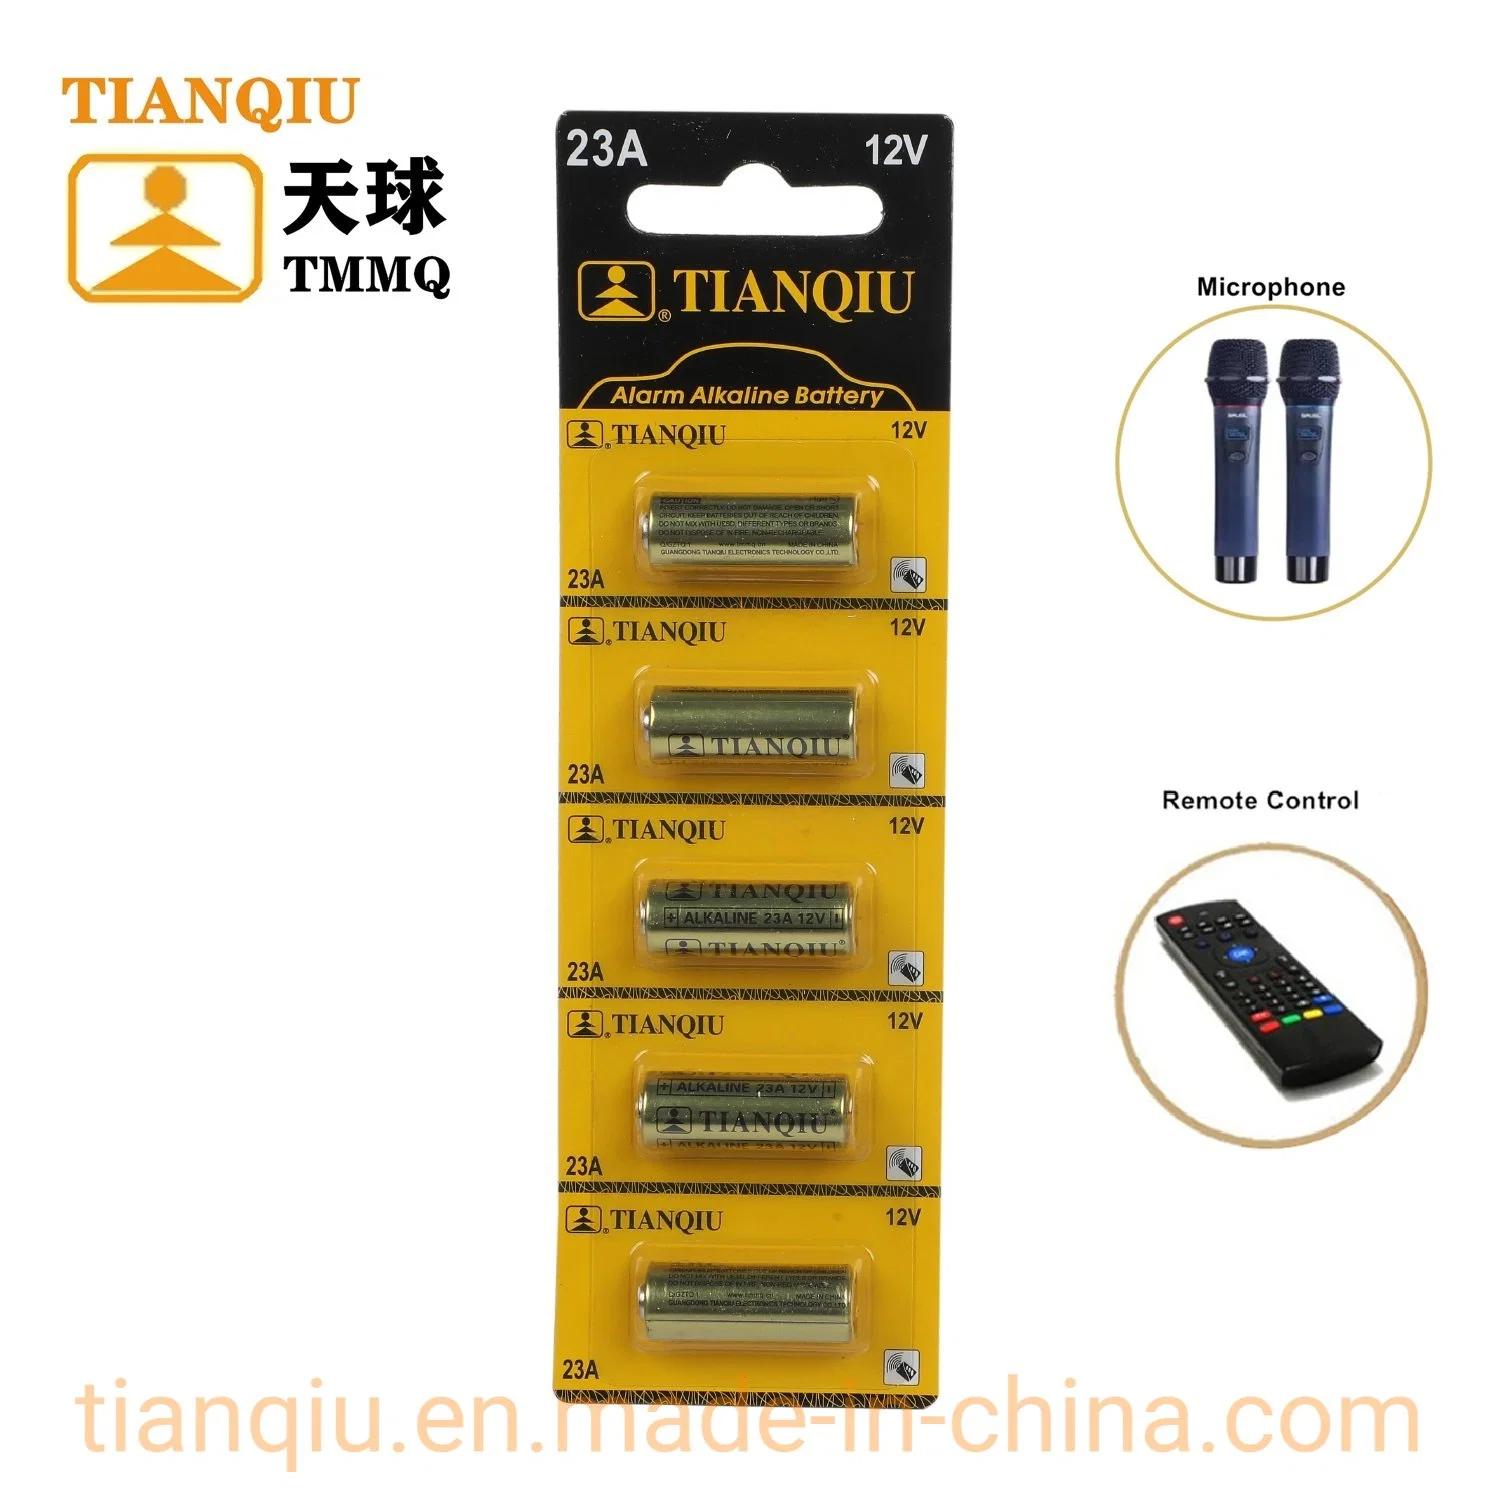 Pilha Alcalina Tianqiu 23A 12V Bateria Seca para bateria de célula de botão de alarme do Relógio Reloj Pilas Baterias Fwctory preço grossista